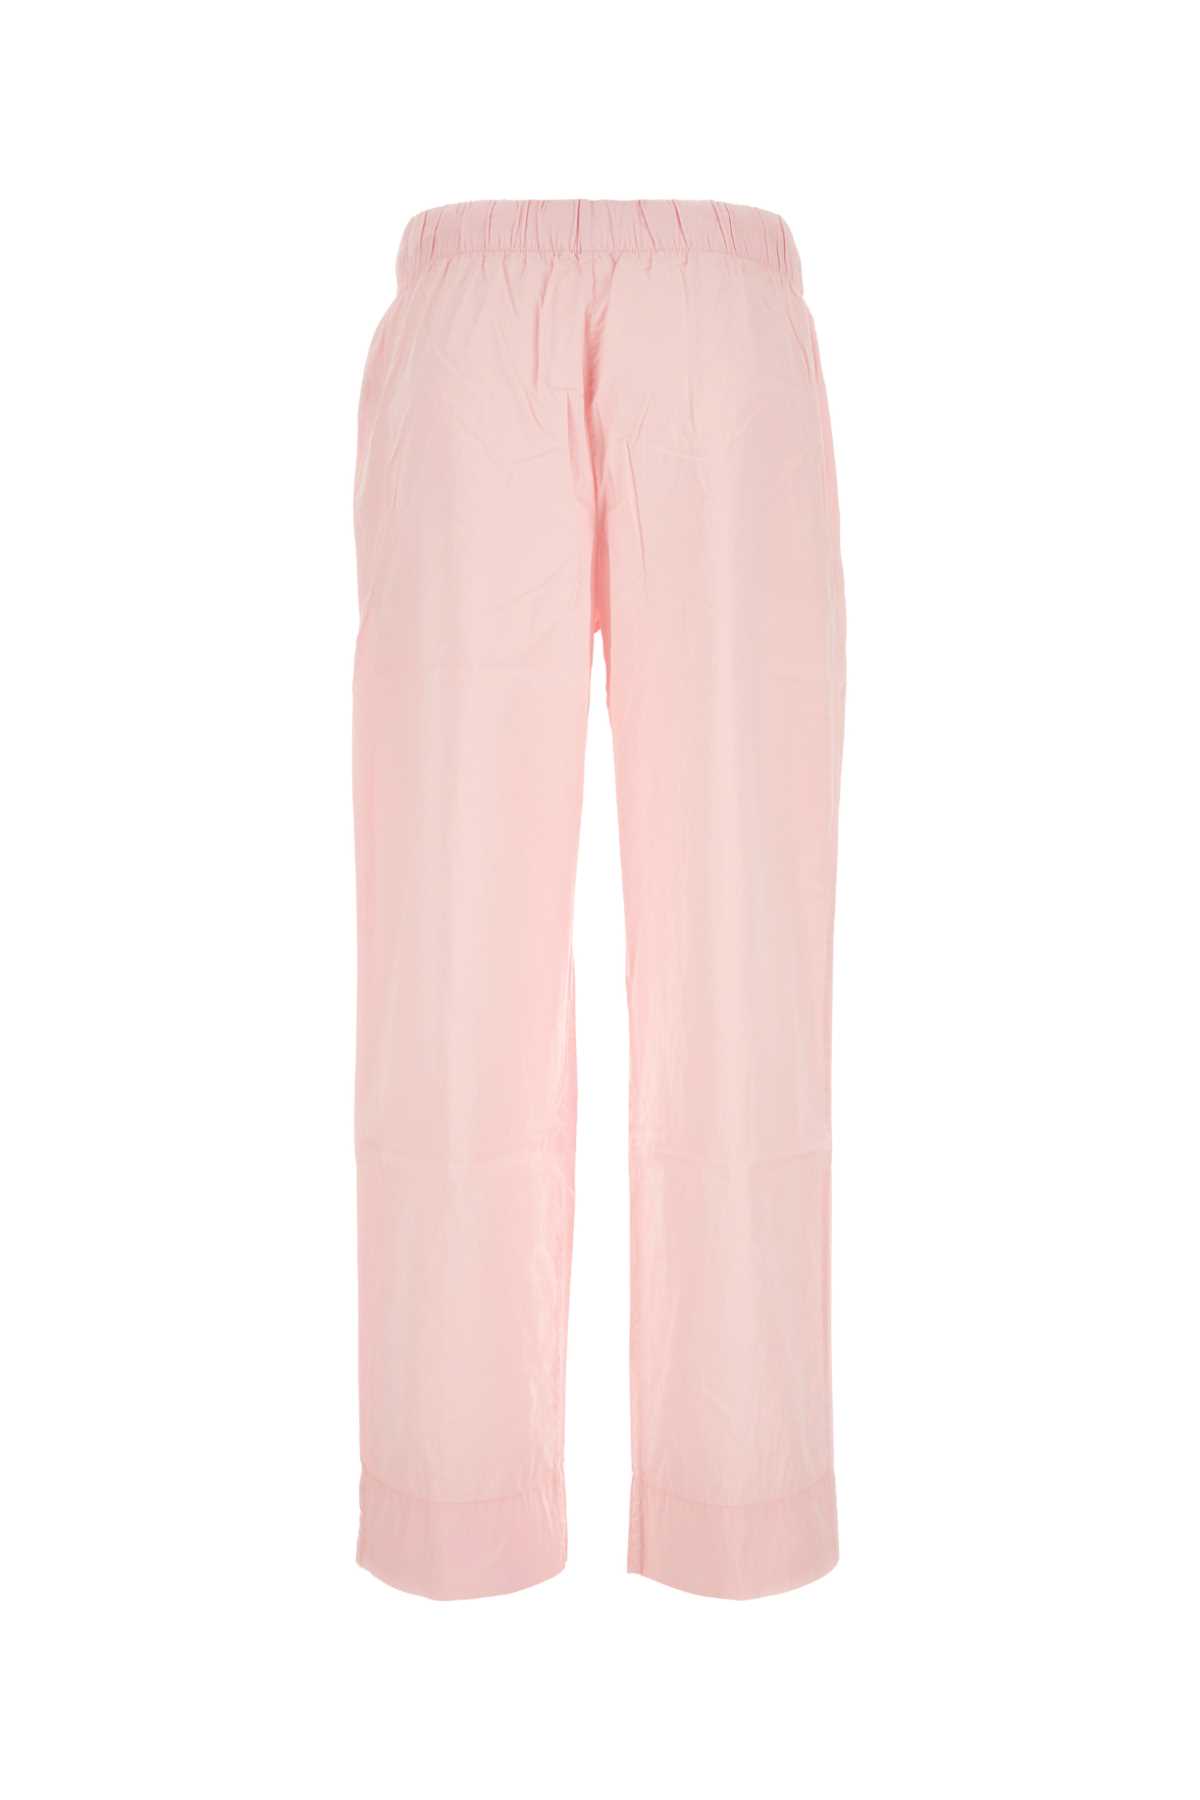 Tekla Pink Cotton Pyjama Pant In Softpink